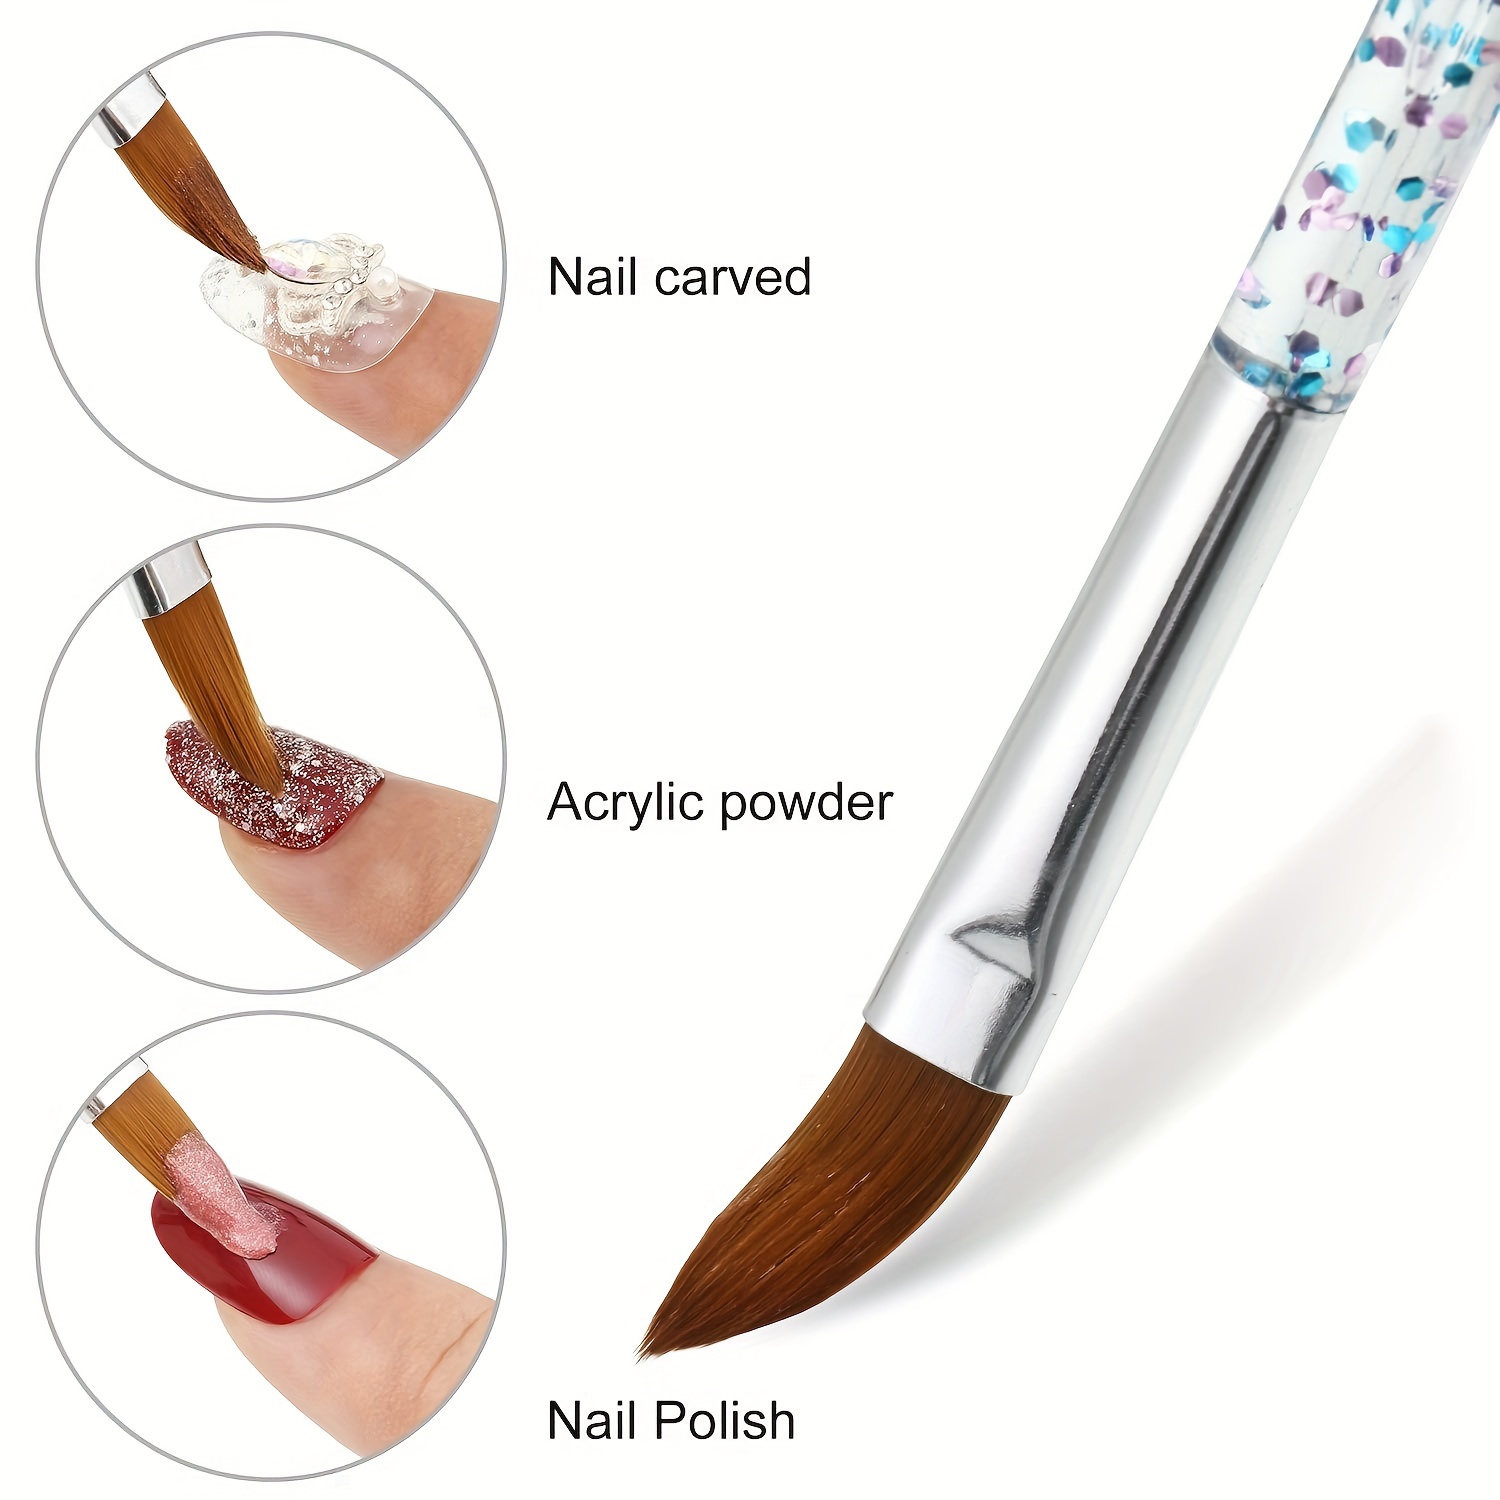 Artdone 31pcs Nail Art Brushes,Nail Art Tool Set,Nail Dotting Tools,Nail Dust Brush,Striping Nail Art Brushes for Long Lines,Nail Drawing Pen for